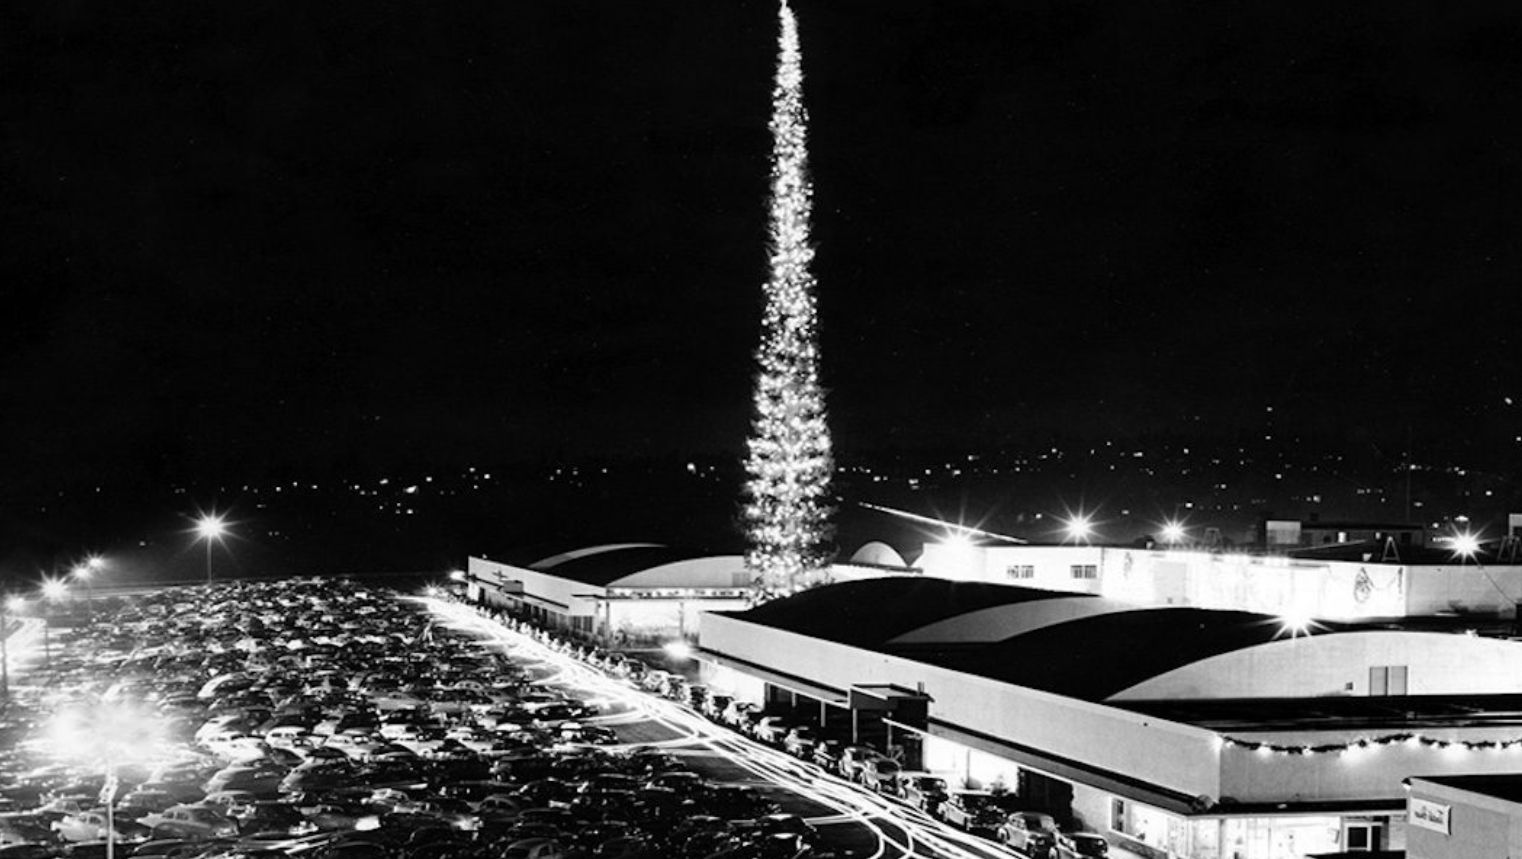 До сих пор с 1950 года не побит рекорд самой высокой рождественской елки в мире